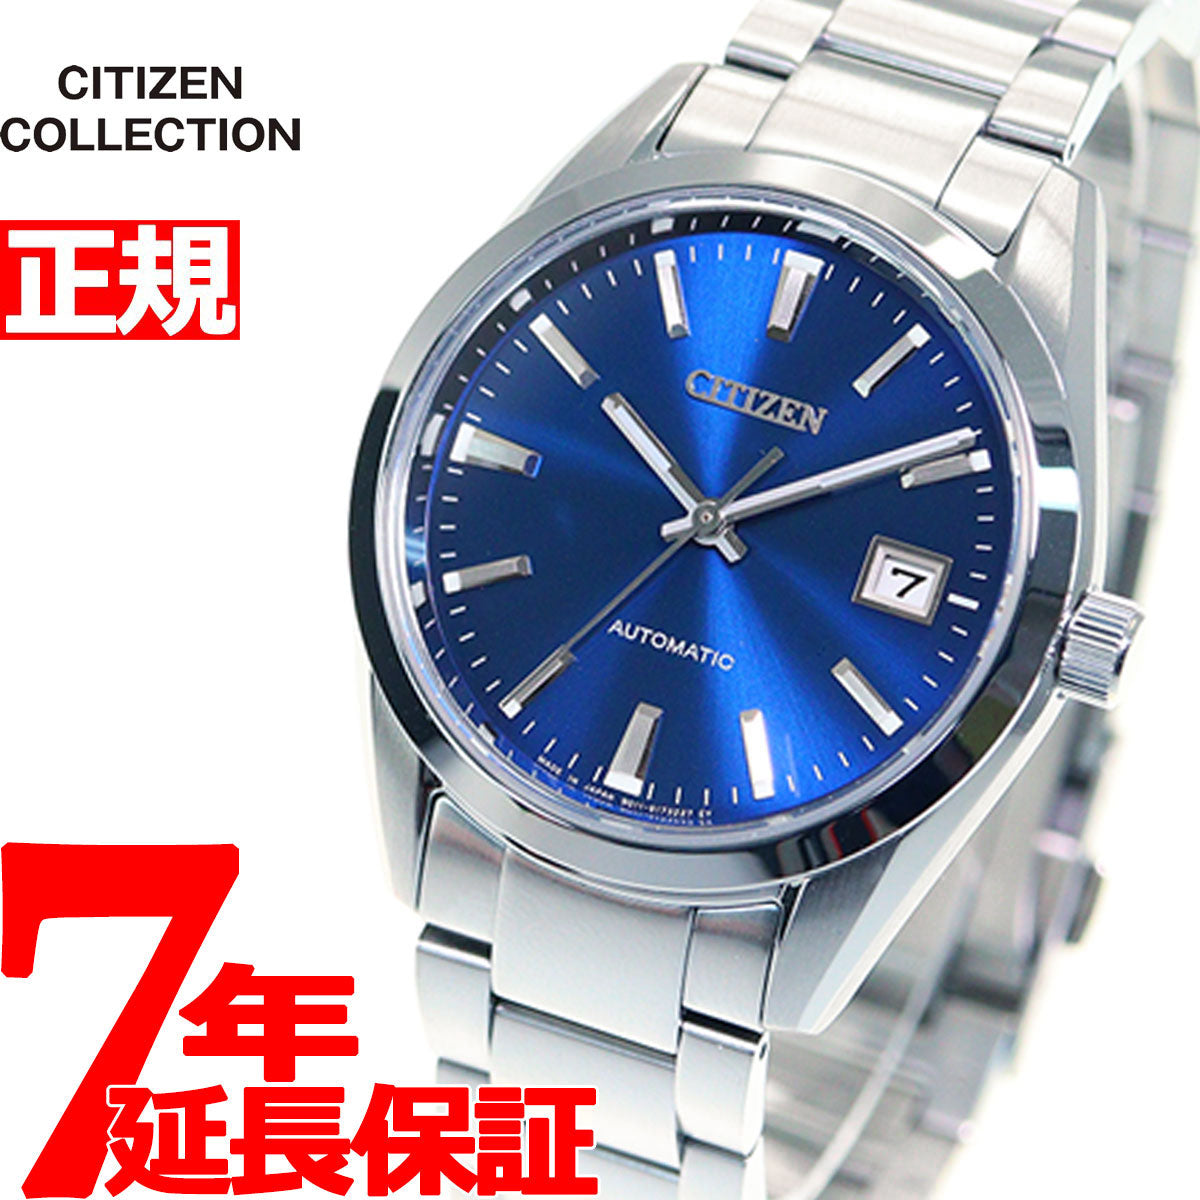 シチズンコレクション CITIZEN COLLECTION メカニカル 自動巻き 機械式 腕時計 メンズ クラシカルライン NB1050-59L